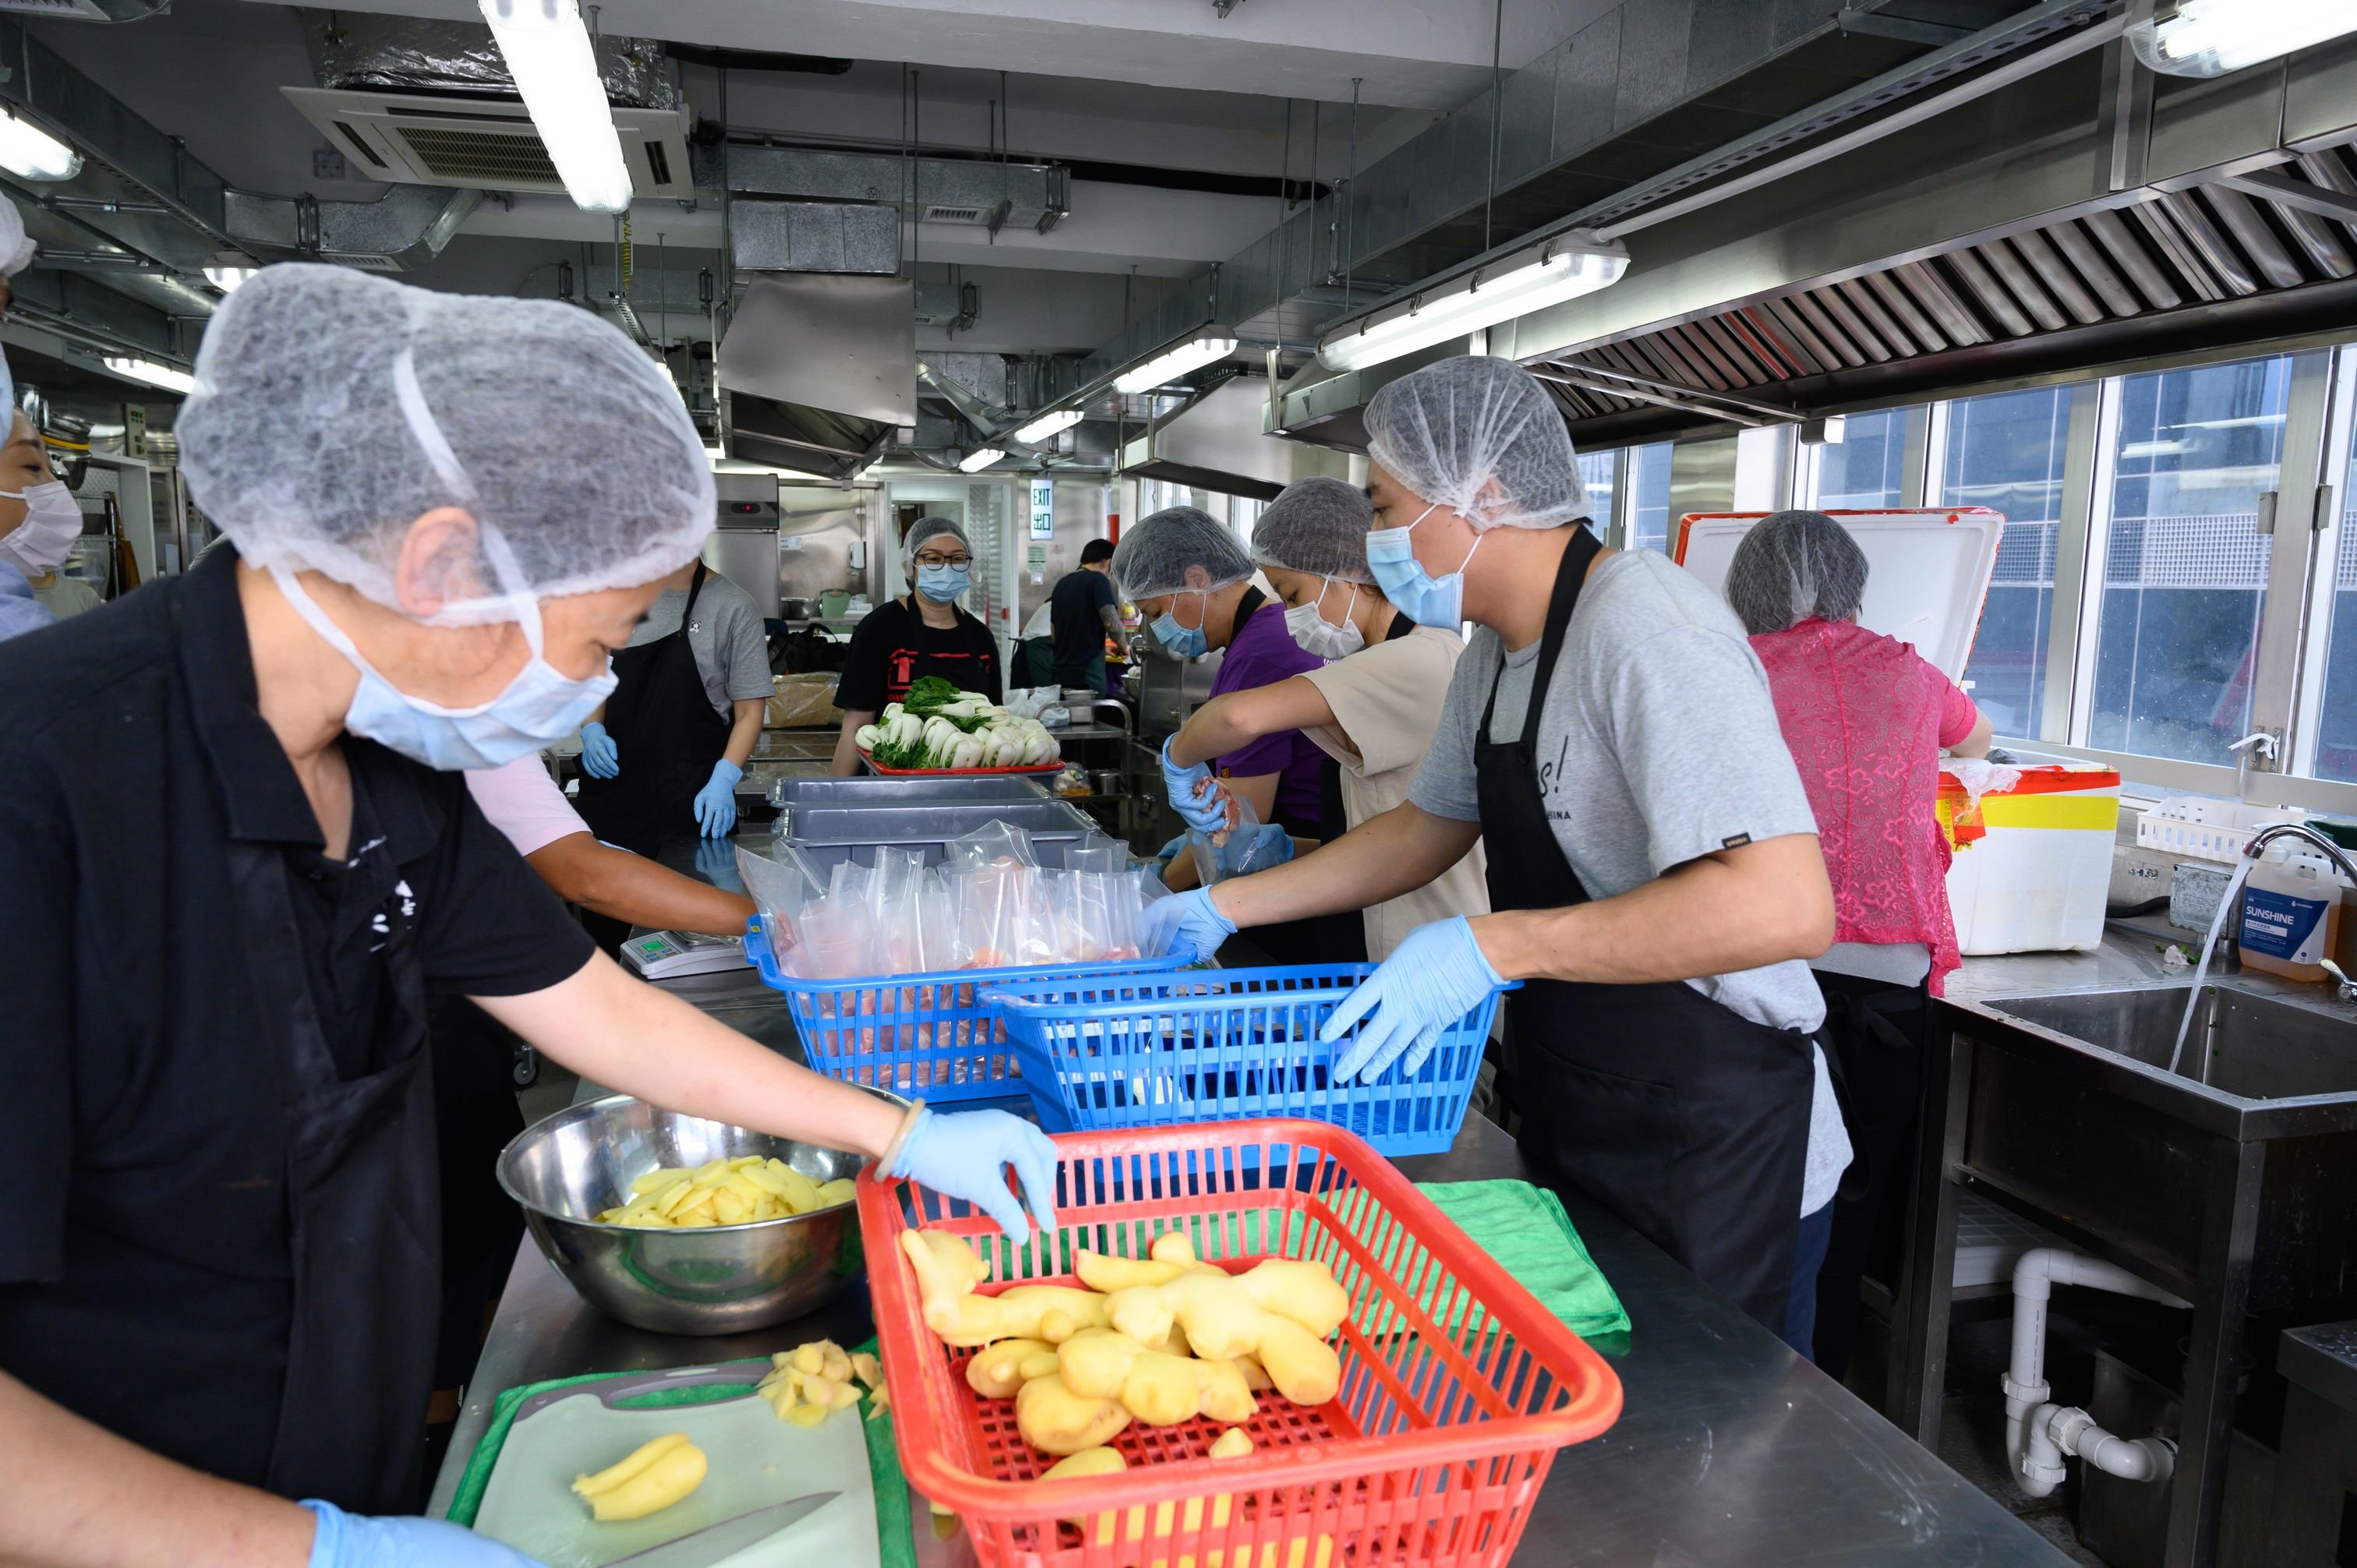 在香港，乐施会推出「悭得有营????基层」计划，「有营????包」由社会企业「共厨家作」制作。共厨家作在2016年由乐施会及社创基金提供种子基金资助成立，旨在透过善用厨房闲置时段，让基层市民进驻制作美食出售，以赚取收入。